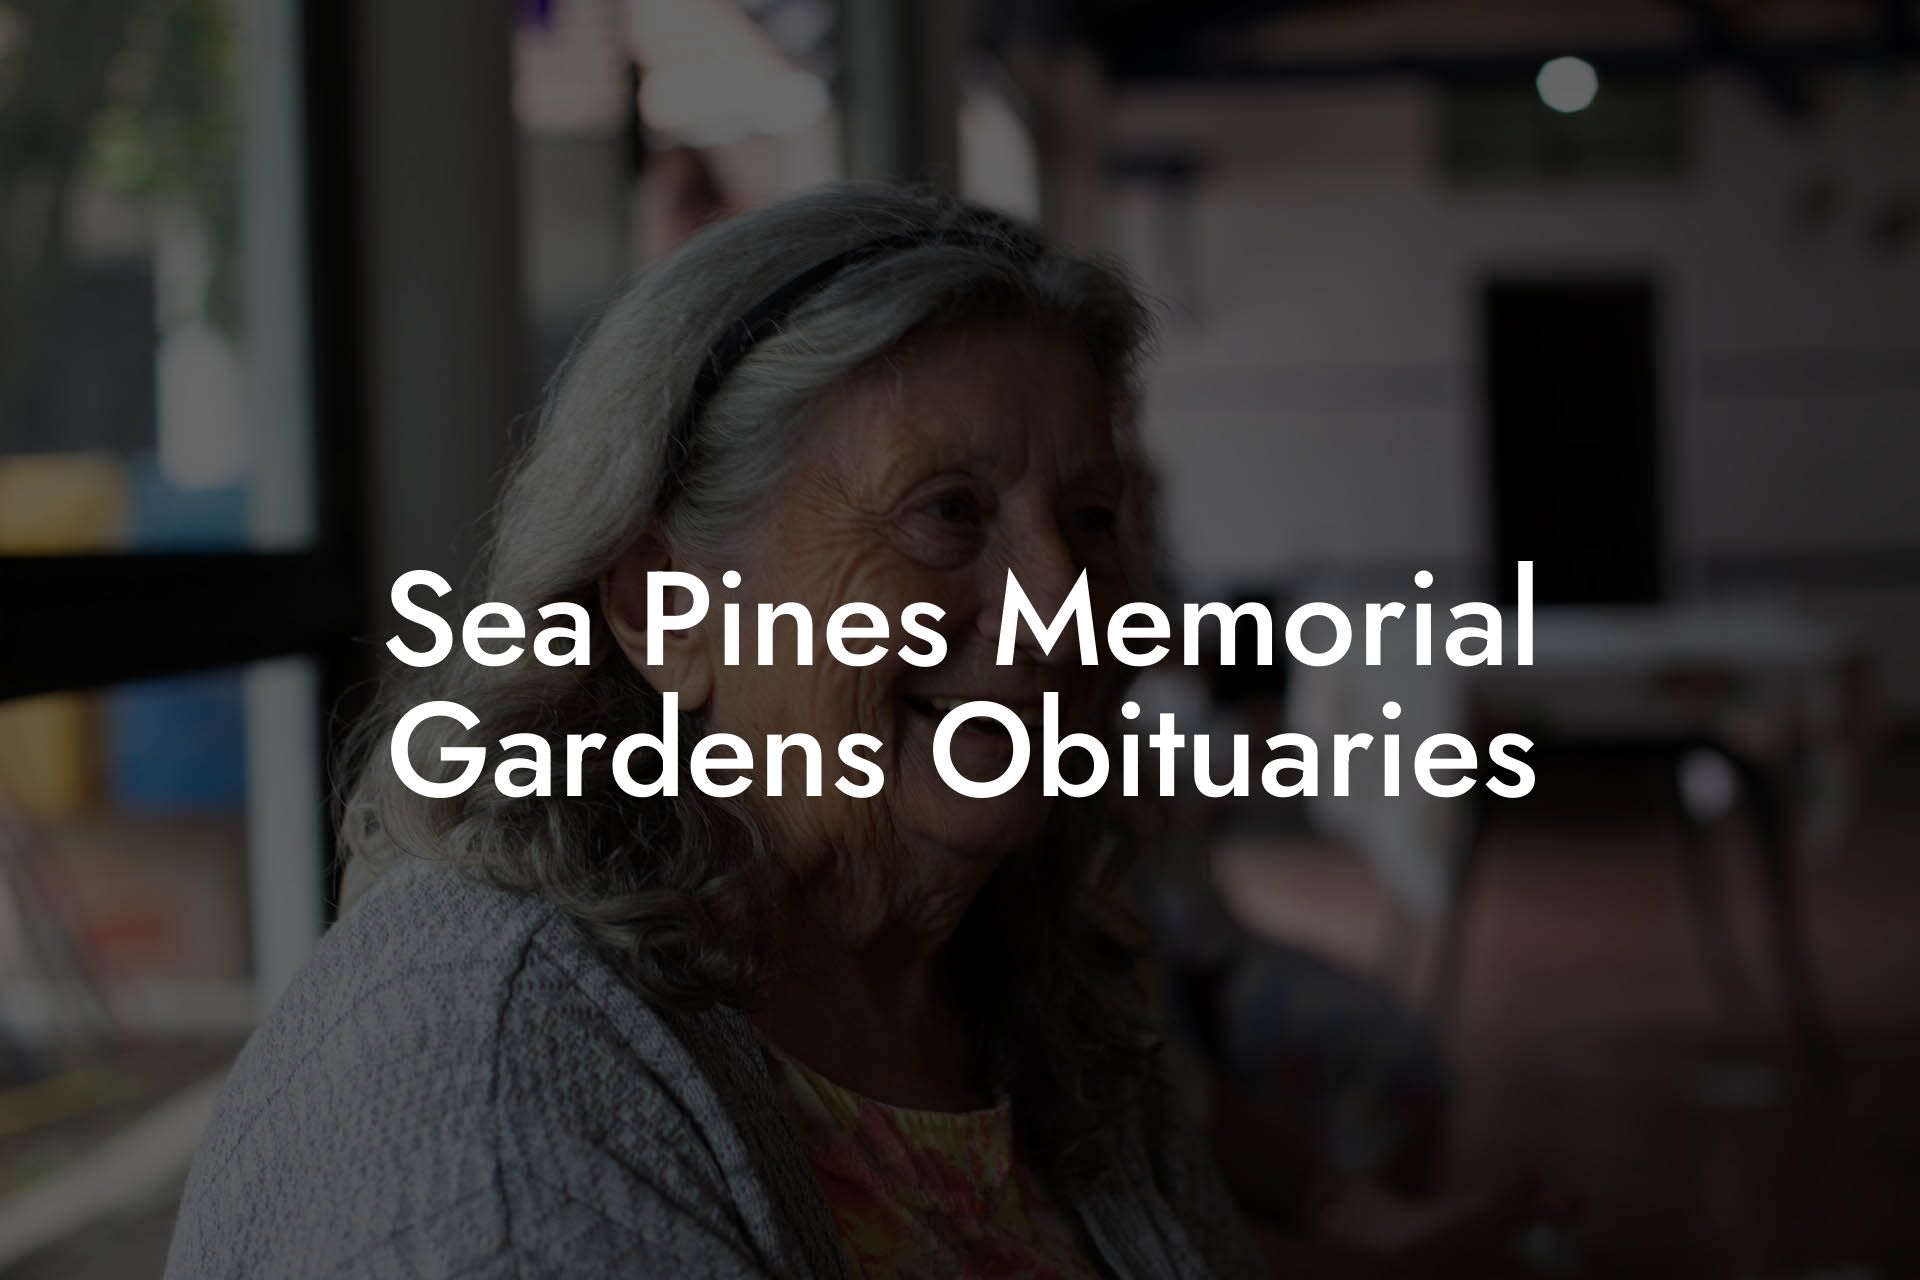 Sea Pines Memorial Gardens Obituaries